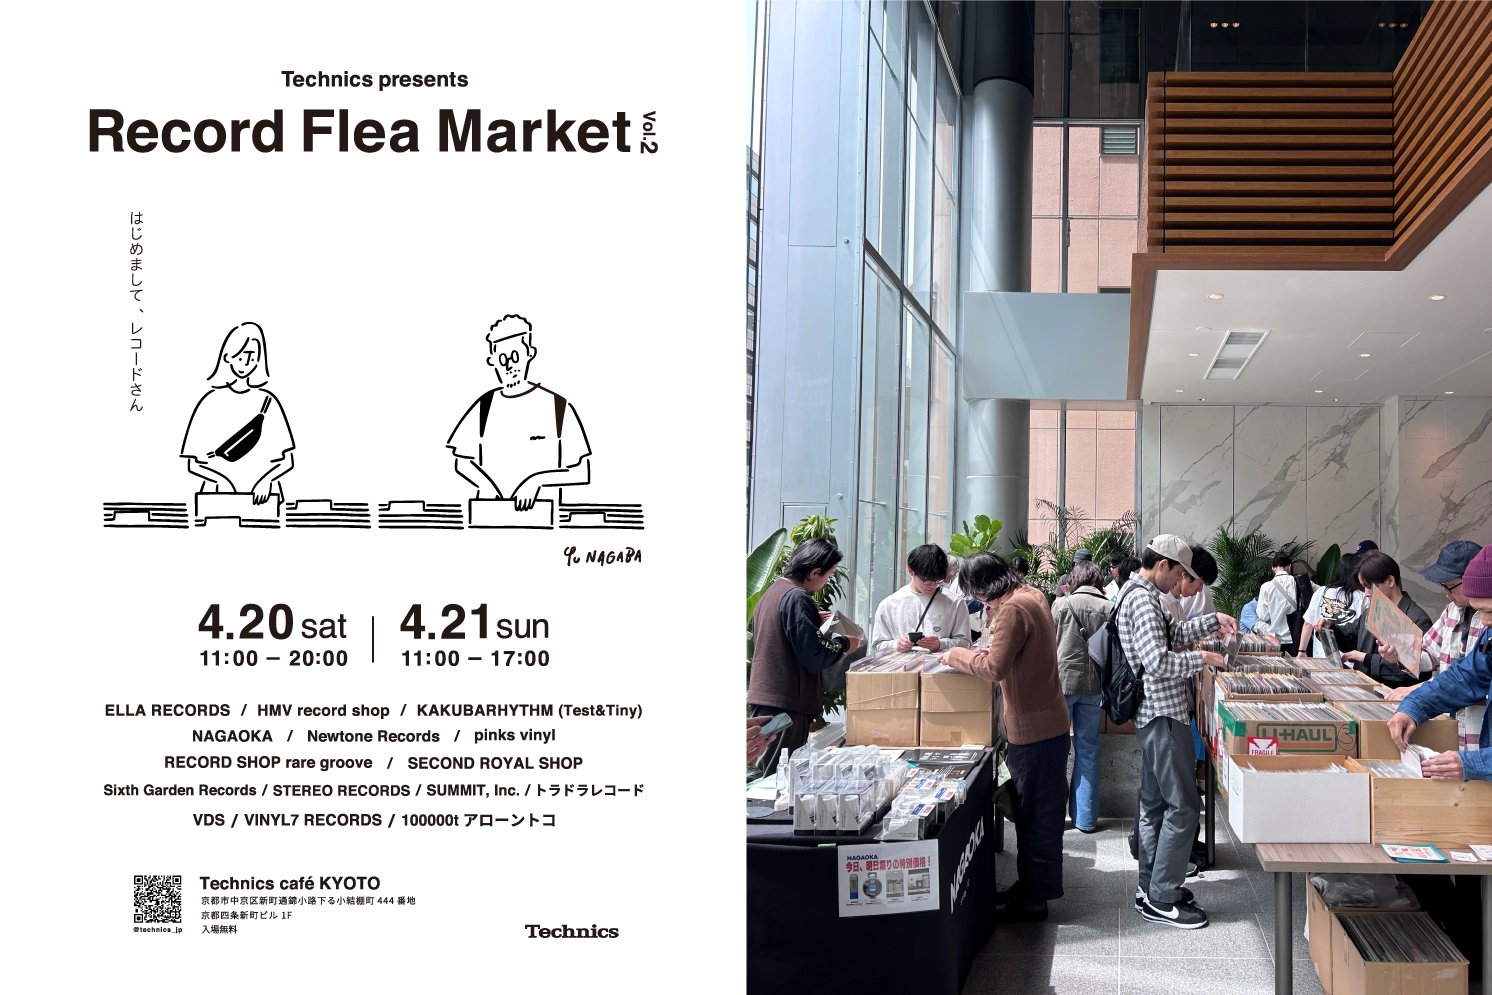 「Technics Café KYOTO」で開催されたRecoad Flea Marketのポスター画像 | Make New Magazine「未来の定番」をつくるために、パナソニックのリアルな姿を伝えるメディア